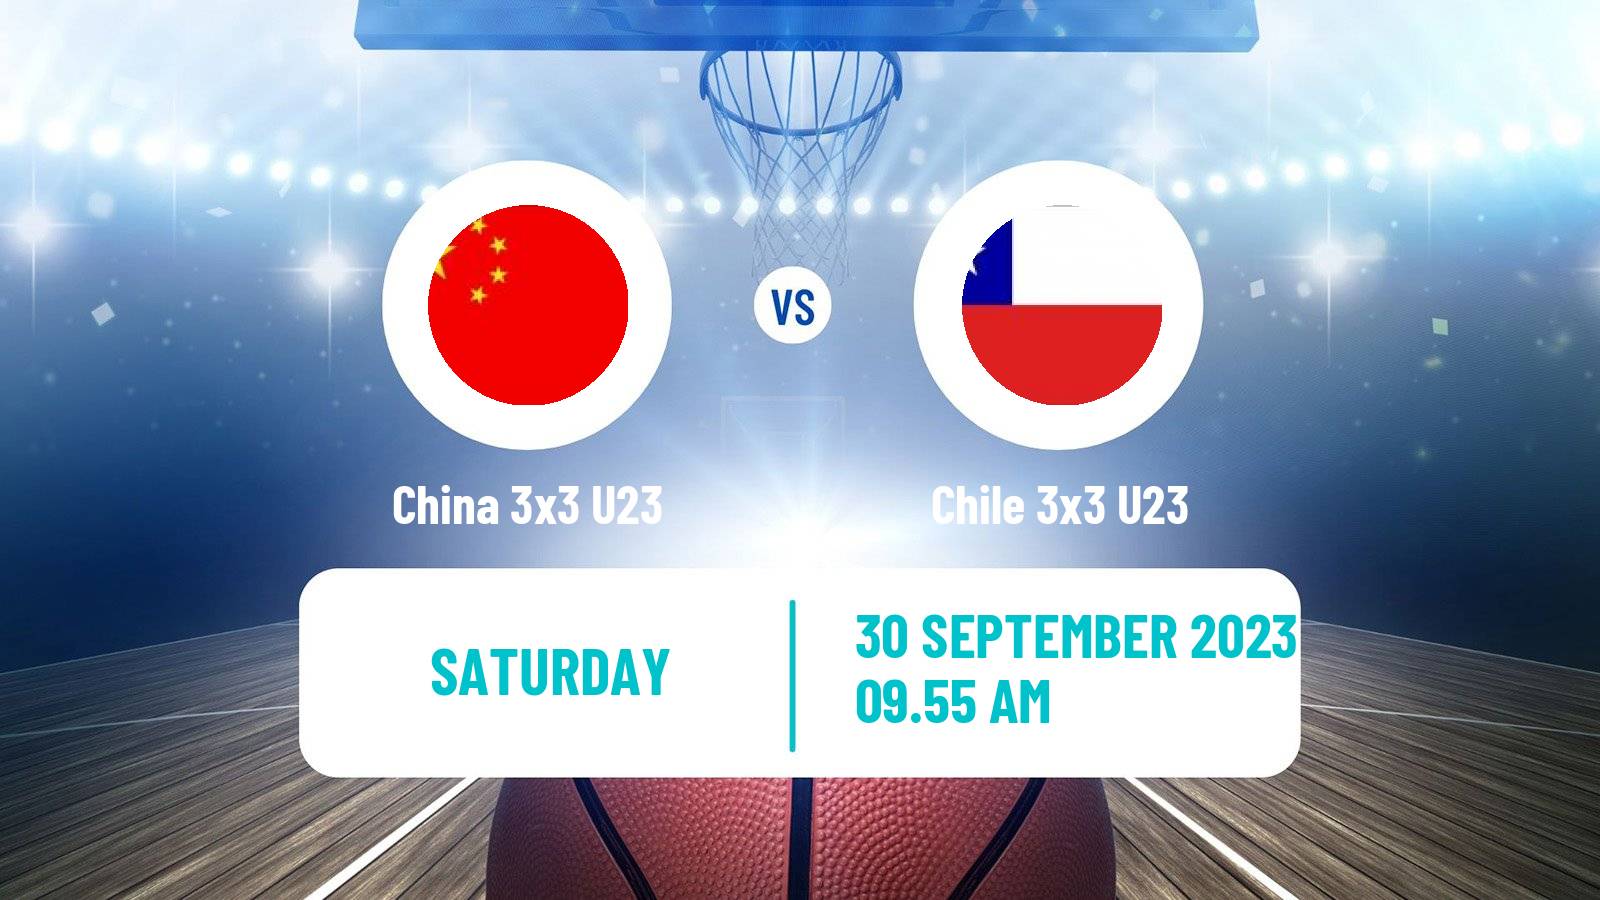 Basketball World Cup Basketball 3x3 U23 China 3x3 U23 - Chile 3x3 U23